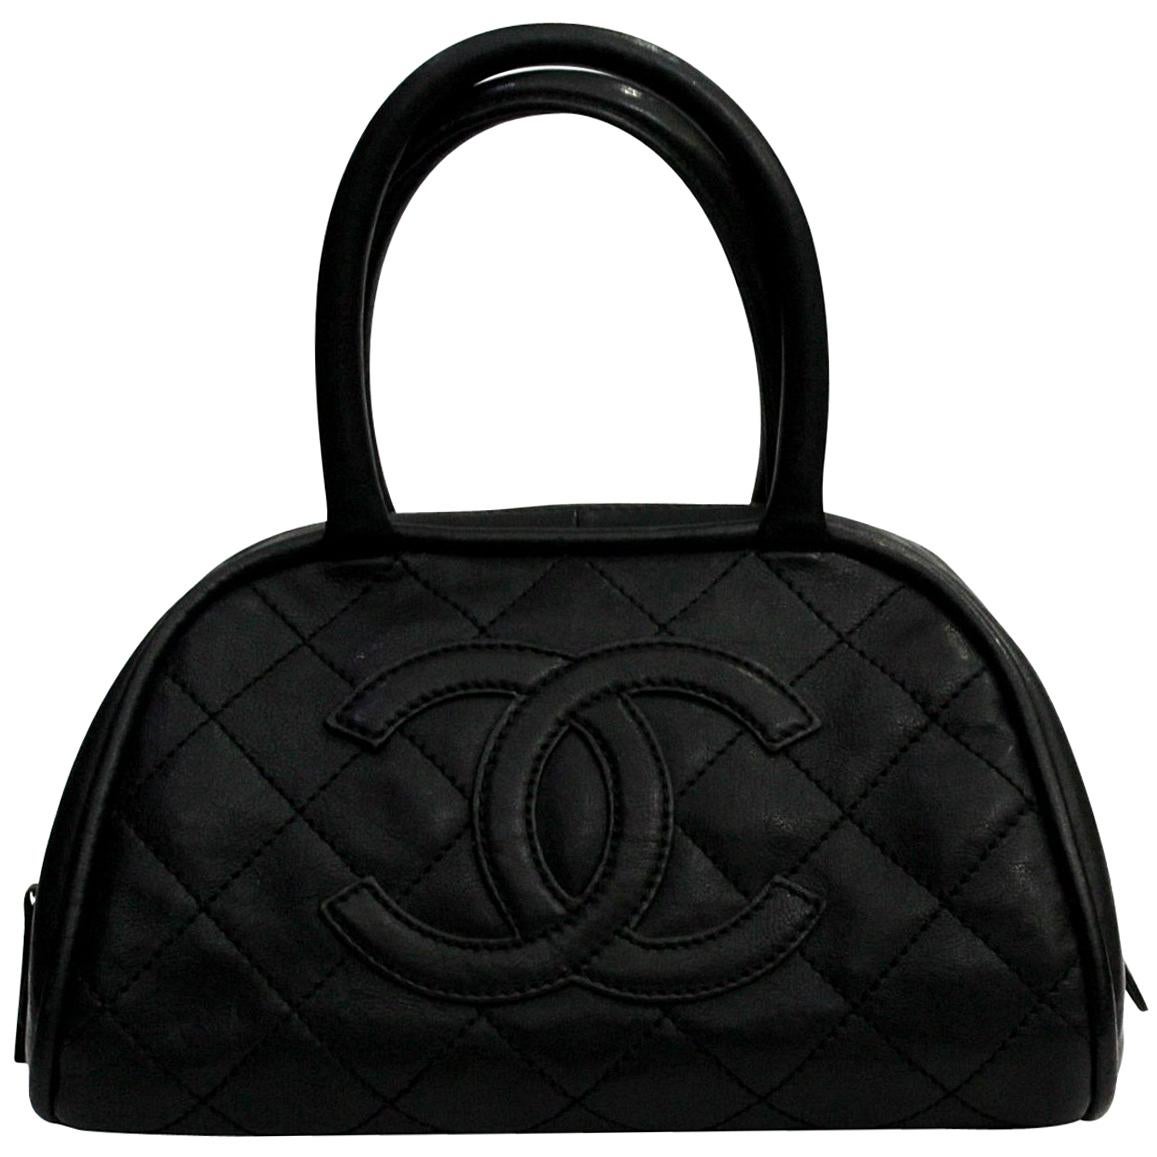 2005/06 Chanel Black Leather Top Handel Bag